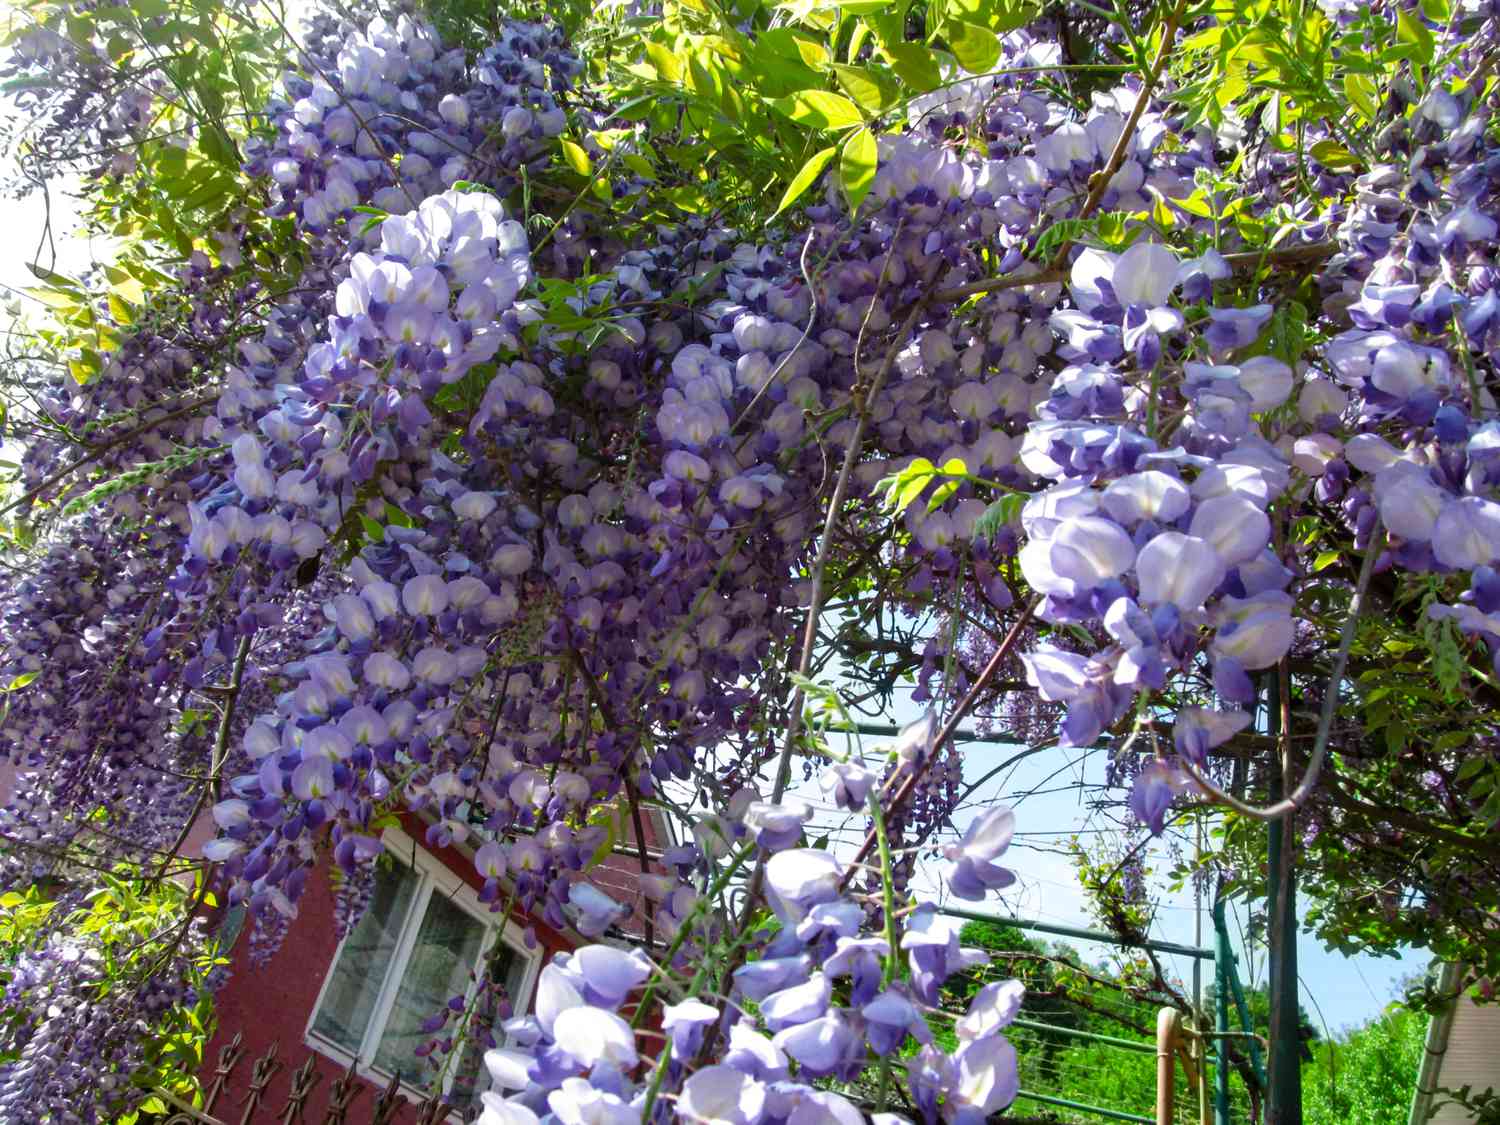 Fond floral lumineux de grandes fleurs de glycine bleu-violet